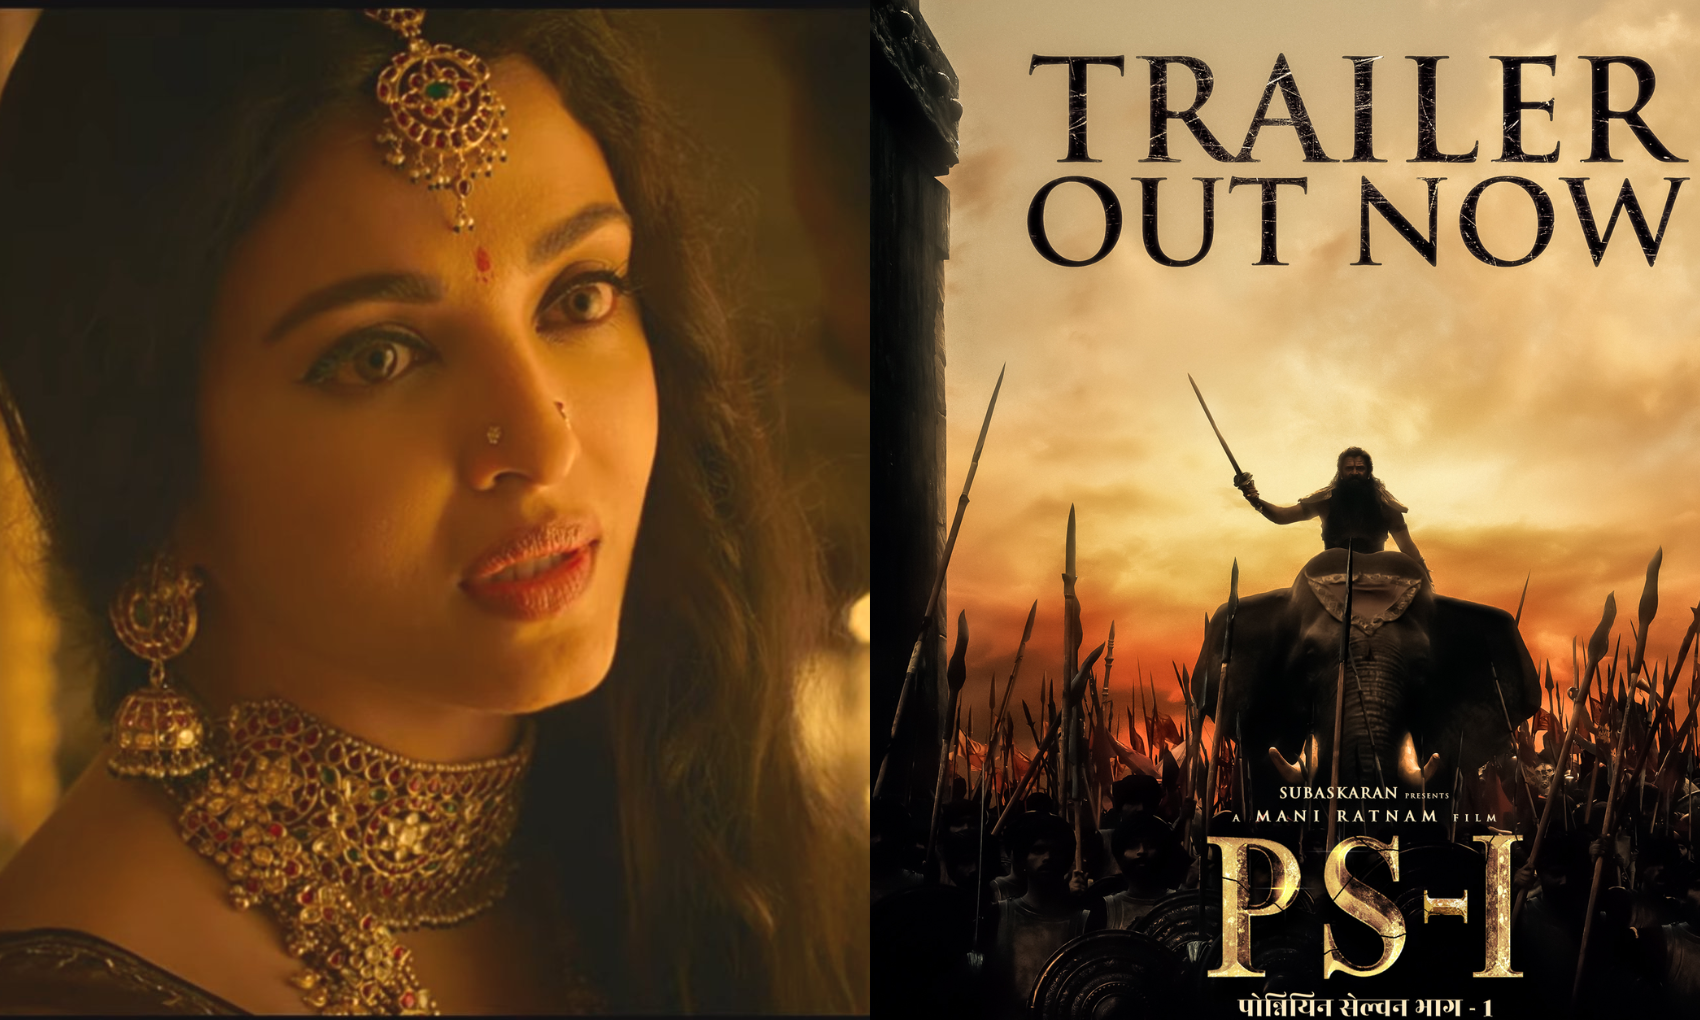 Ponniyin Selvan: साउथ फिल्म ‘पोन्नियिन सेलवन’ का दमदार ट्रेलर रिलीज, किसी देवी जैसी लग रहीं हैं ऐश्वर्या राय